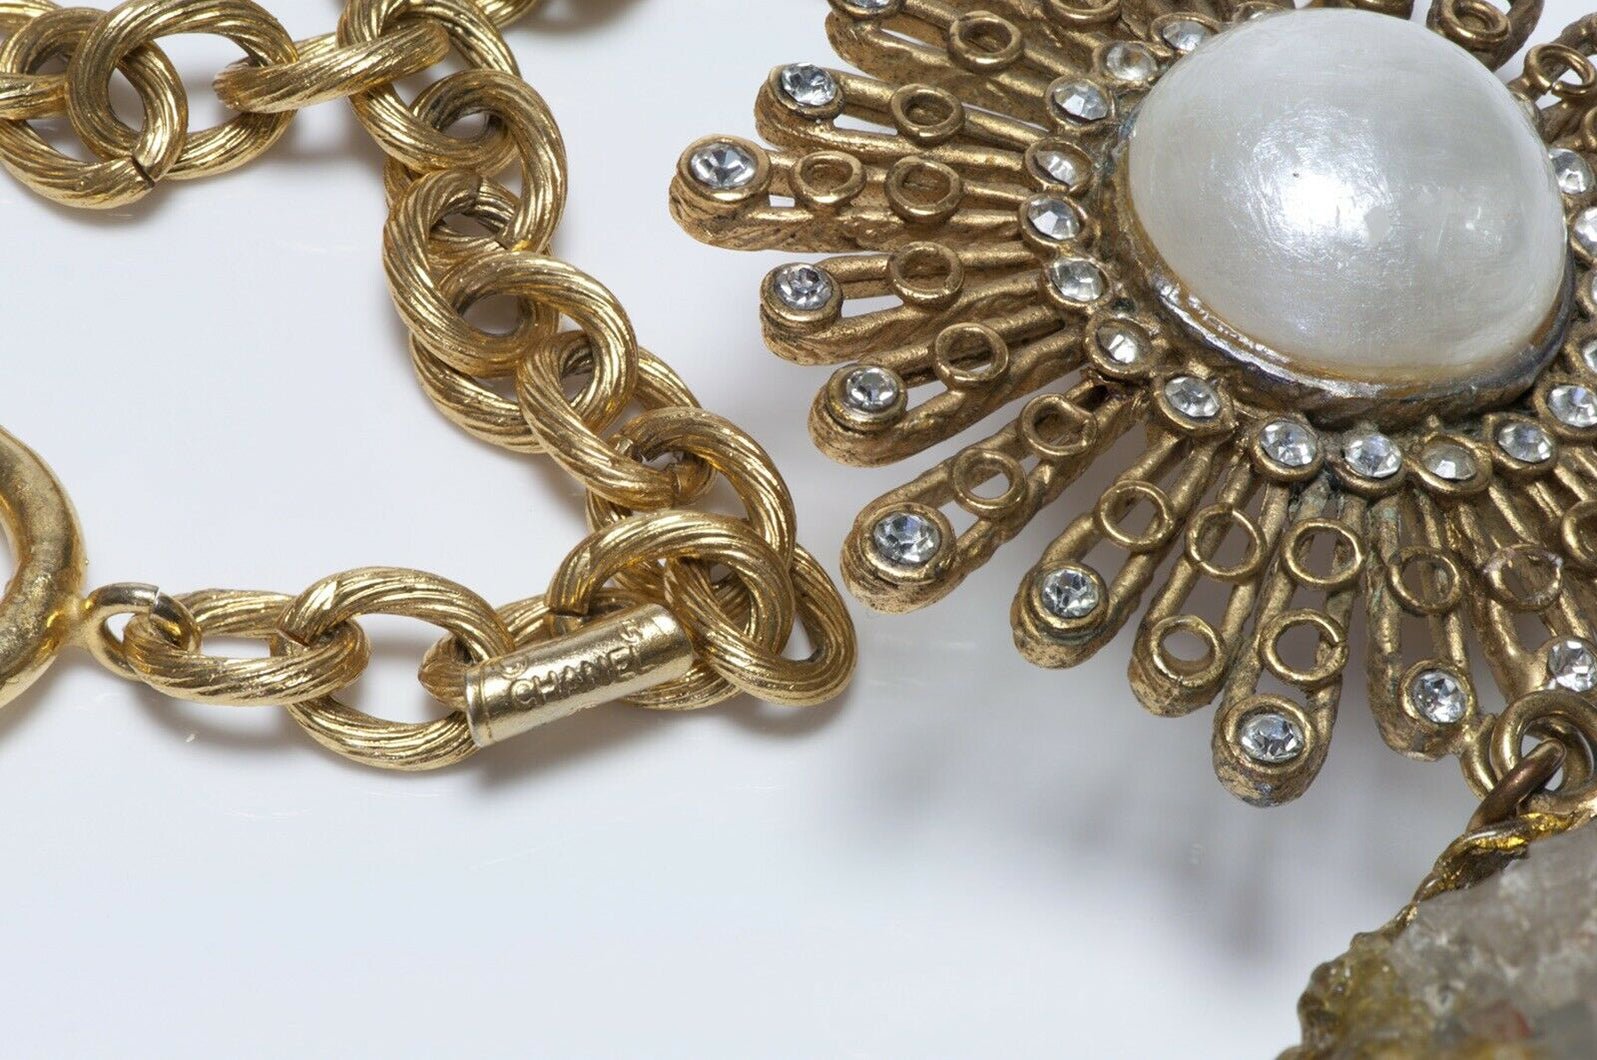 CHANEL Paris 1970’s Quartz Pearl Starburst Pendant Chain Necklace